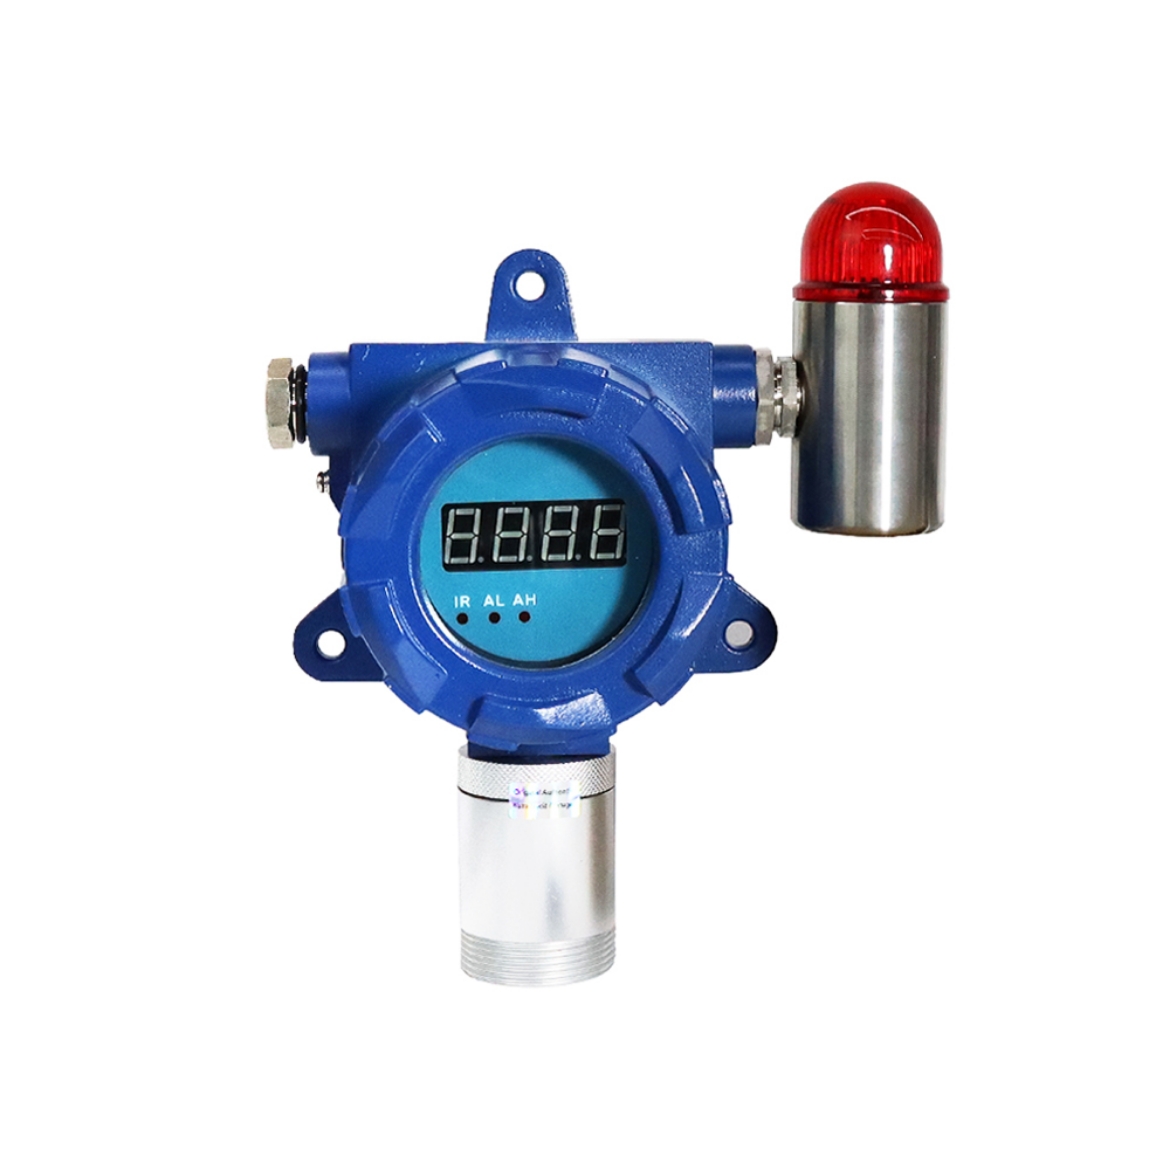 Fixed Nitrogen Dioxide (NO2) Gas Detector